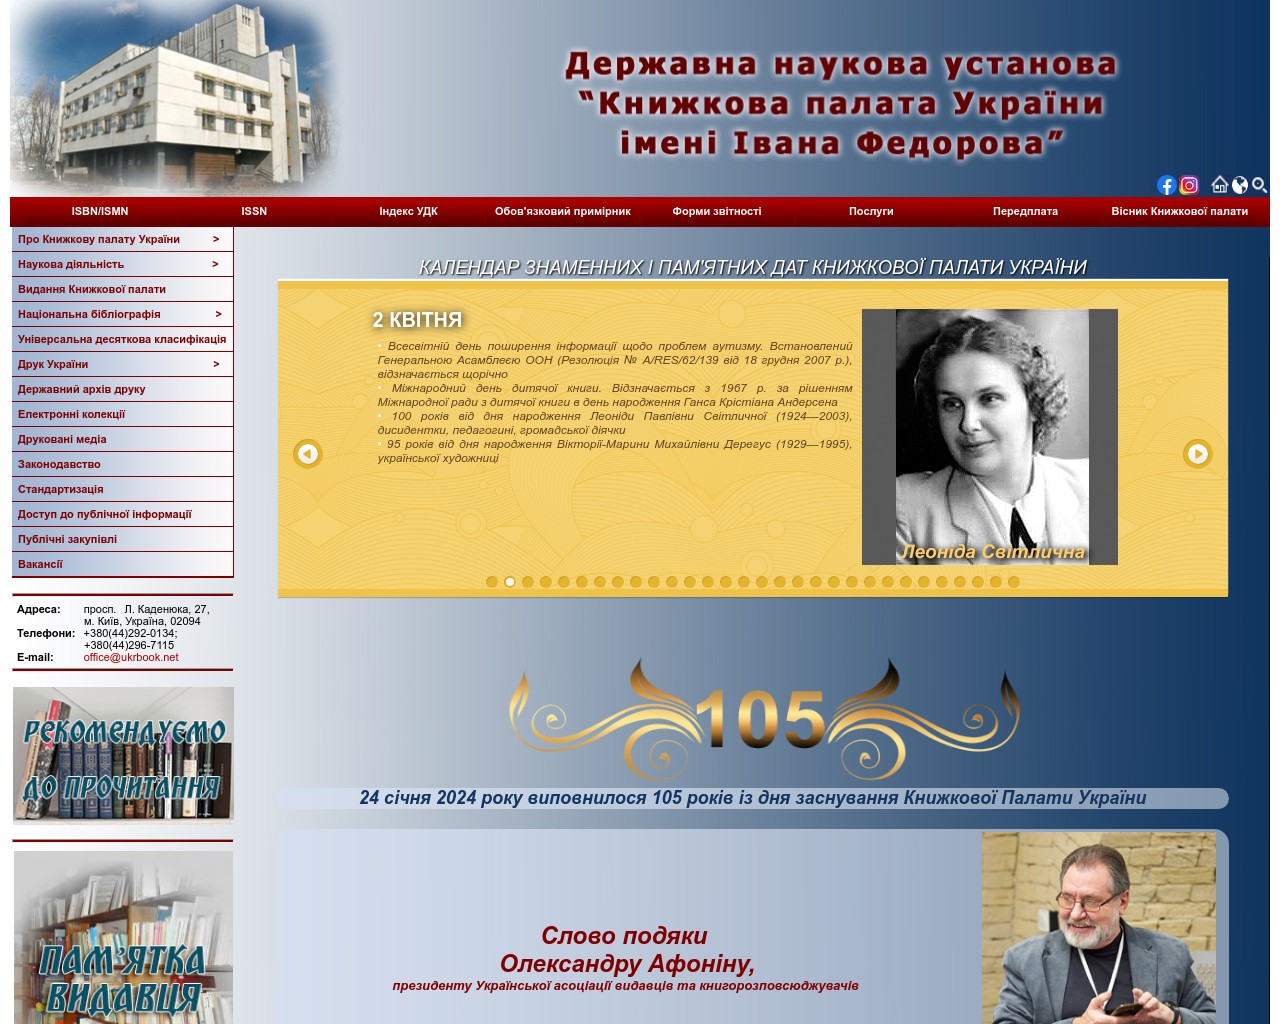 Книжкова палата України — державна наукова установа у сфері видавничої справи та інформаційної діяльності